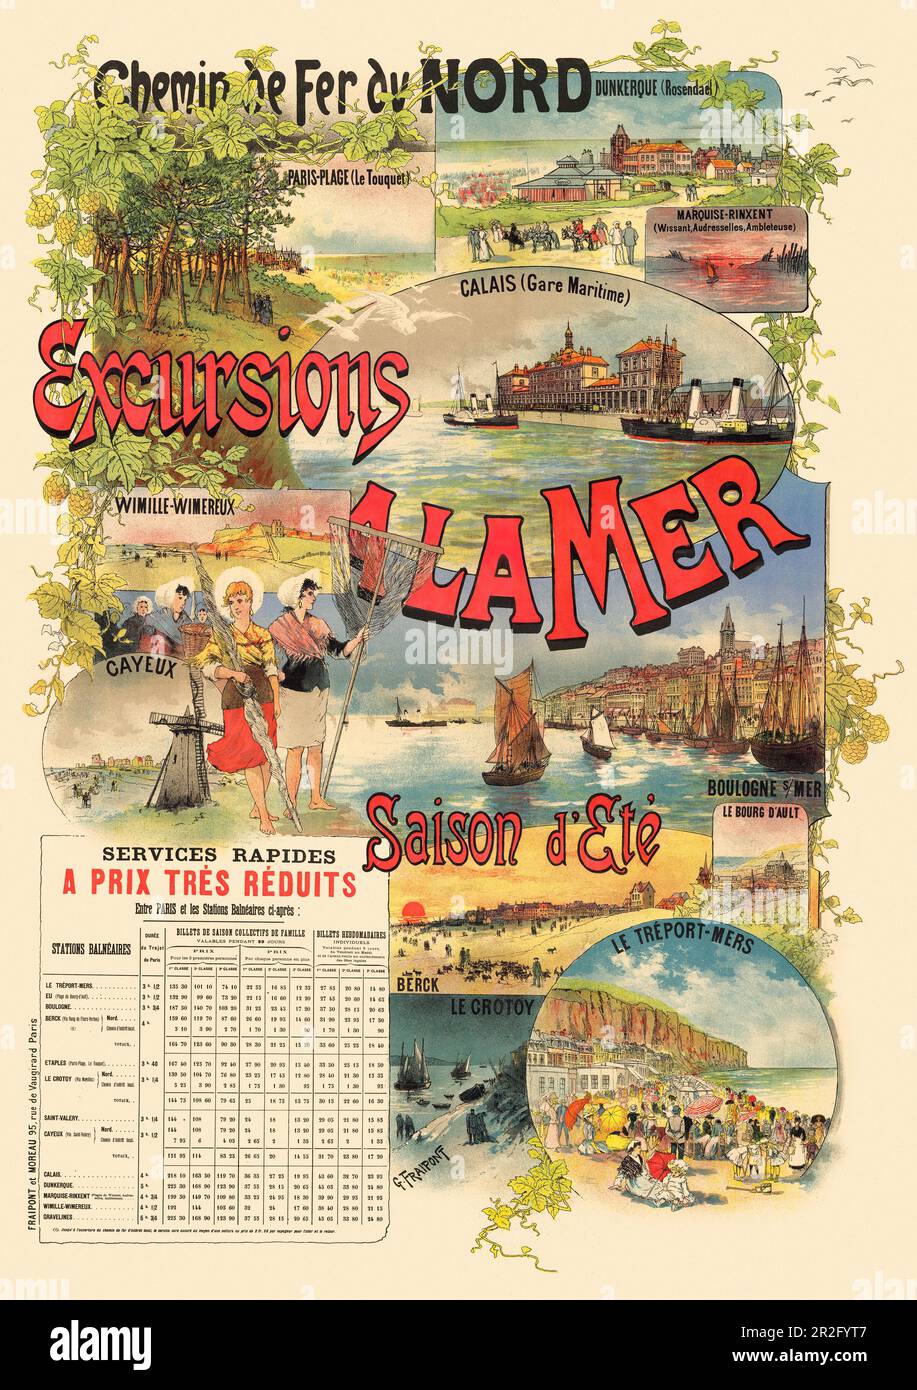 Chemin de Fer du Nord. Ausflüge à la mer von Gustave Fraipont (1849-1923). Poster wurde 1891 in Frankreich veröffentlicht. Stockfoto